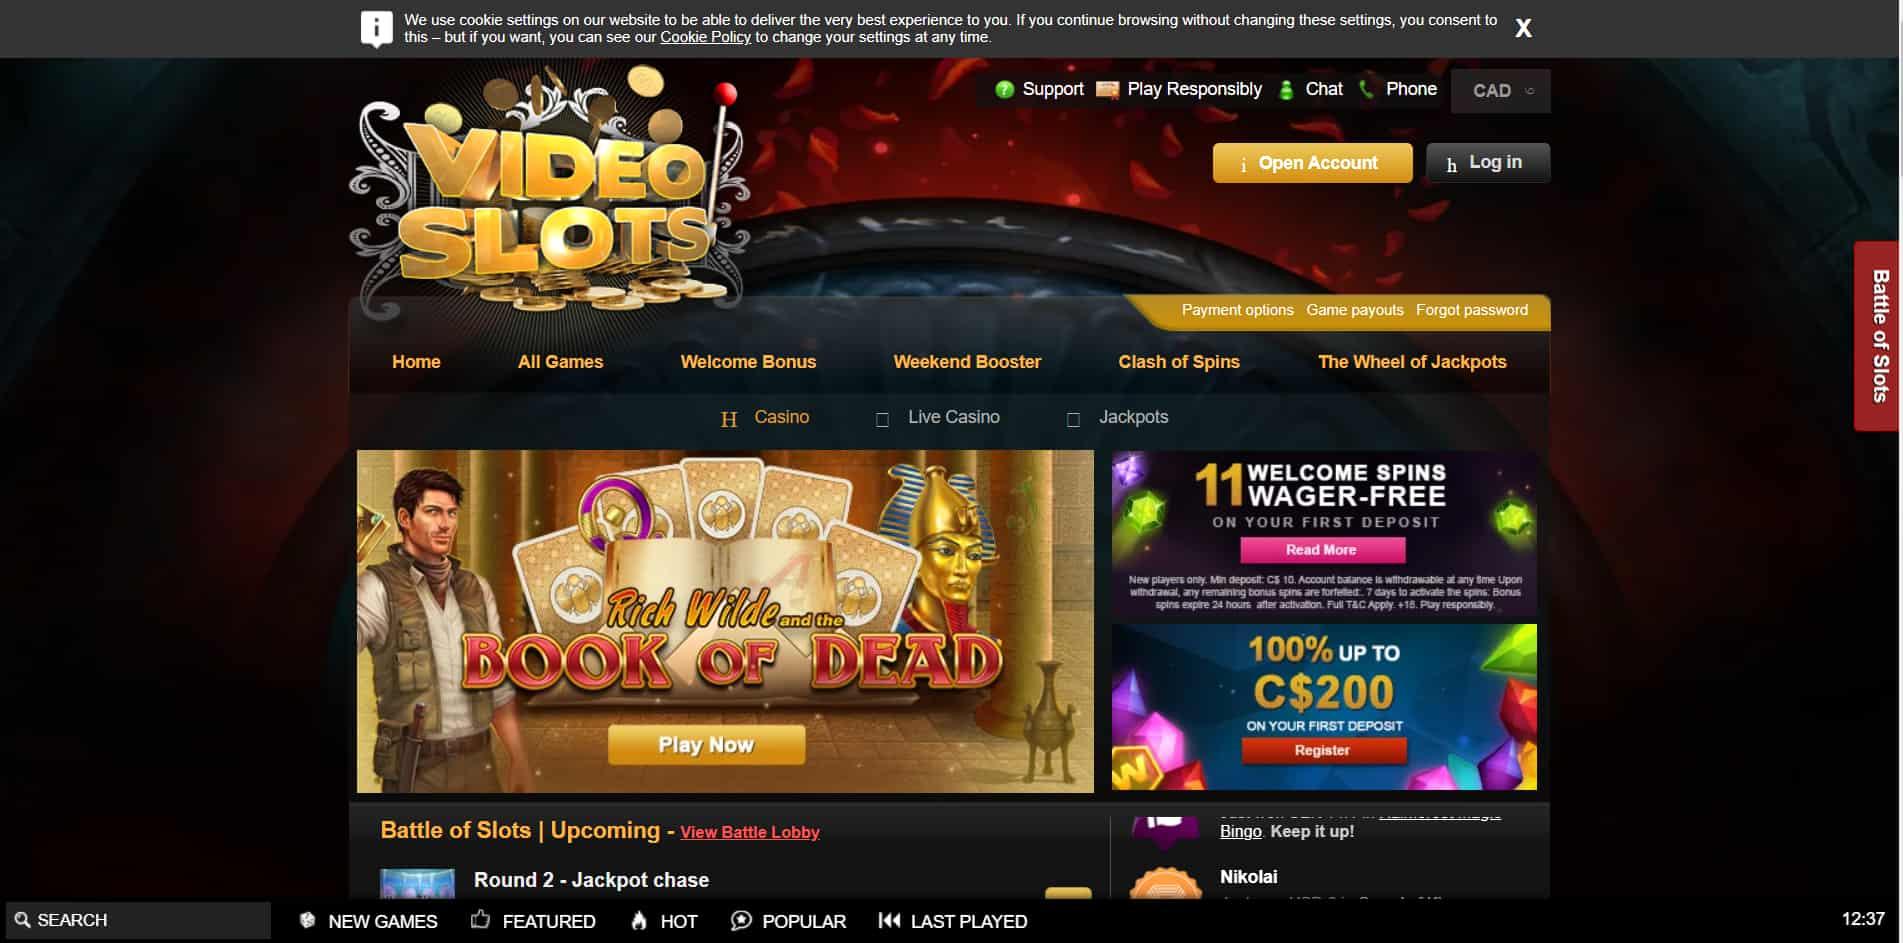 Videoslots casino homepage